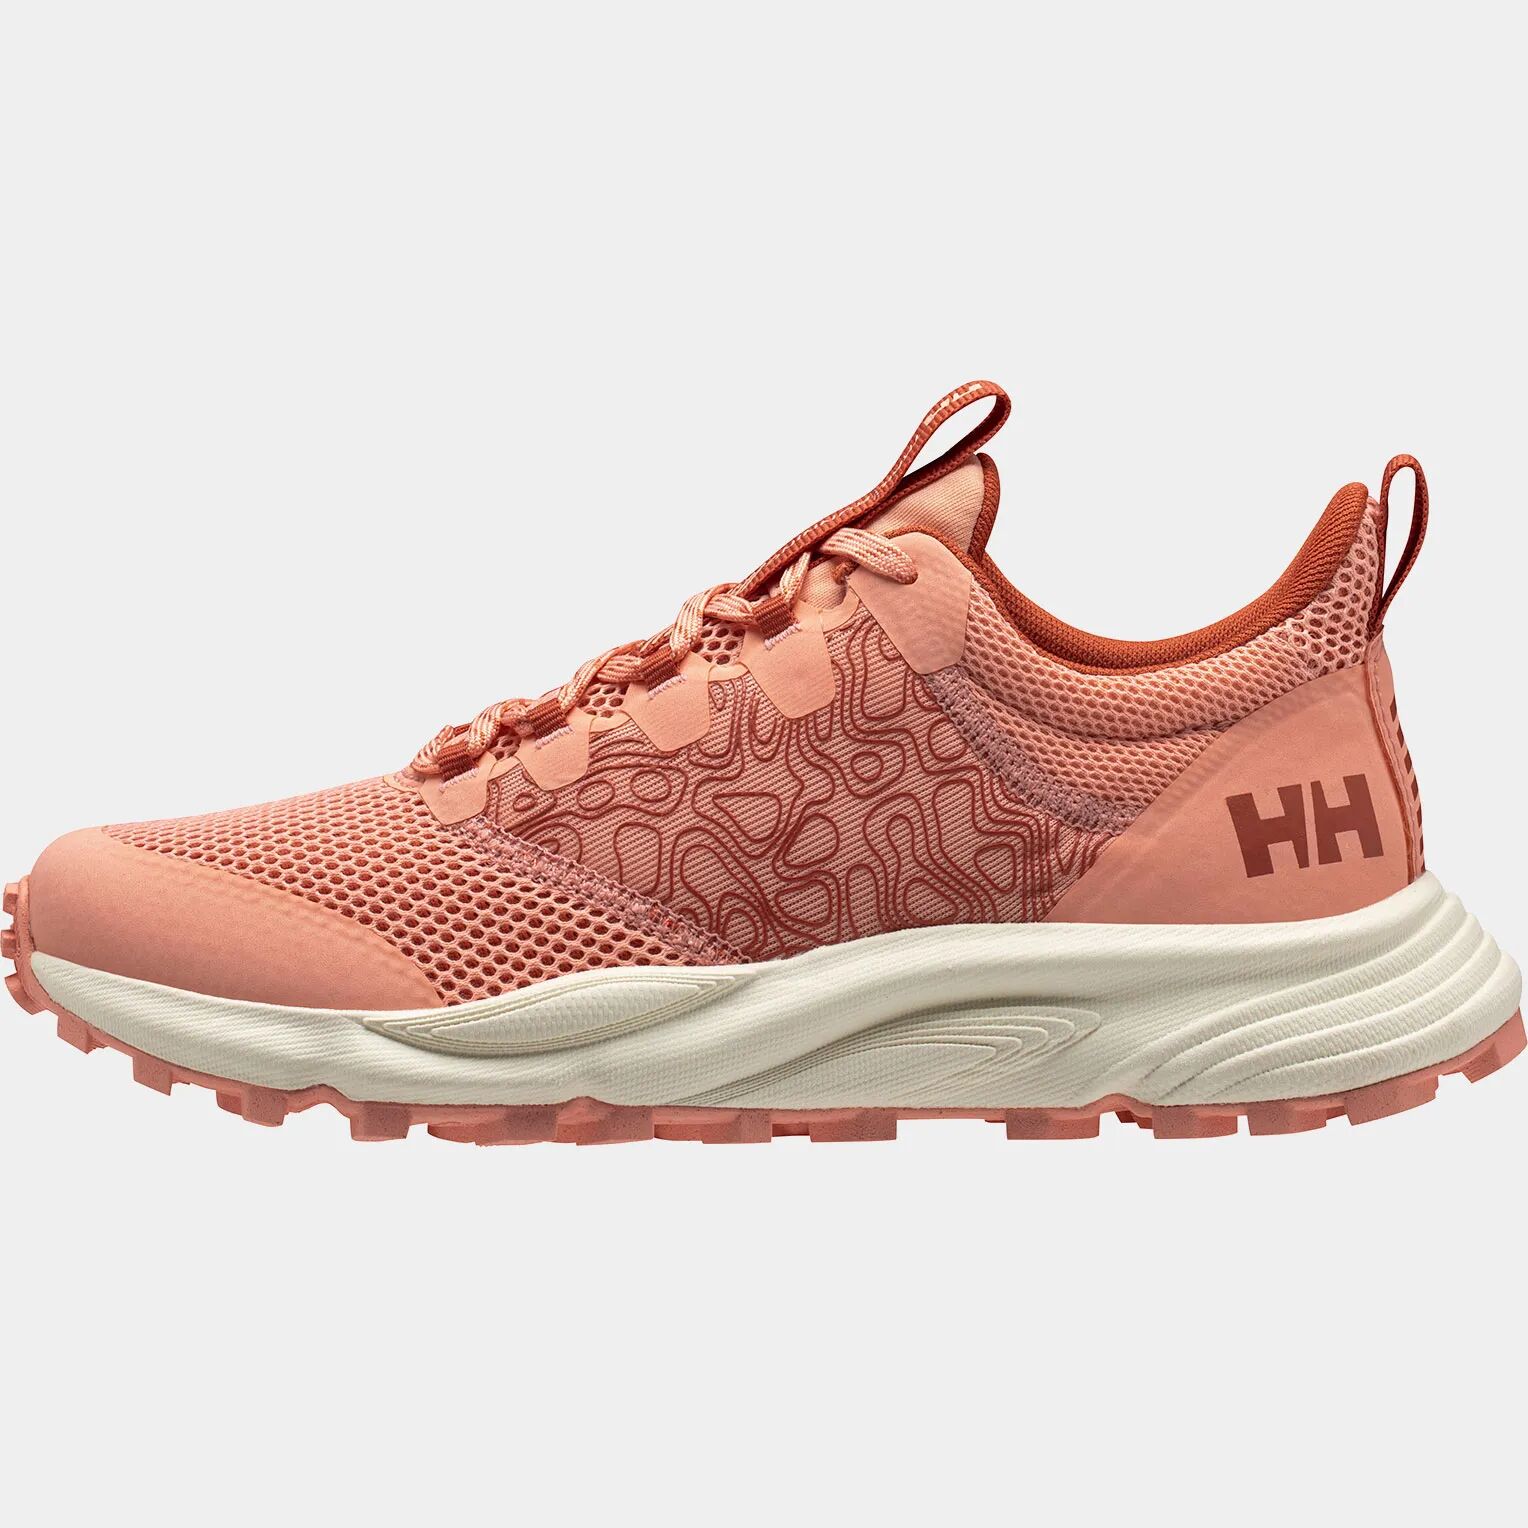 Helly Hansen Women's Featherswift Trail Running Shoes Orange 10